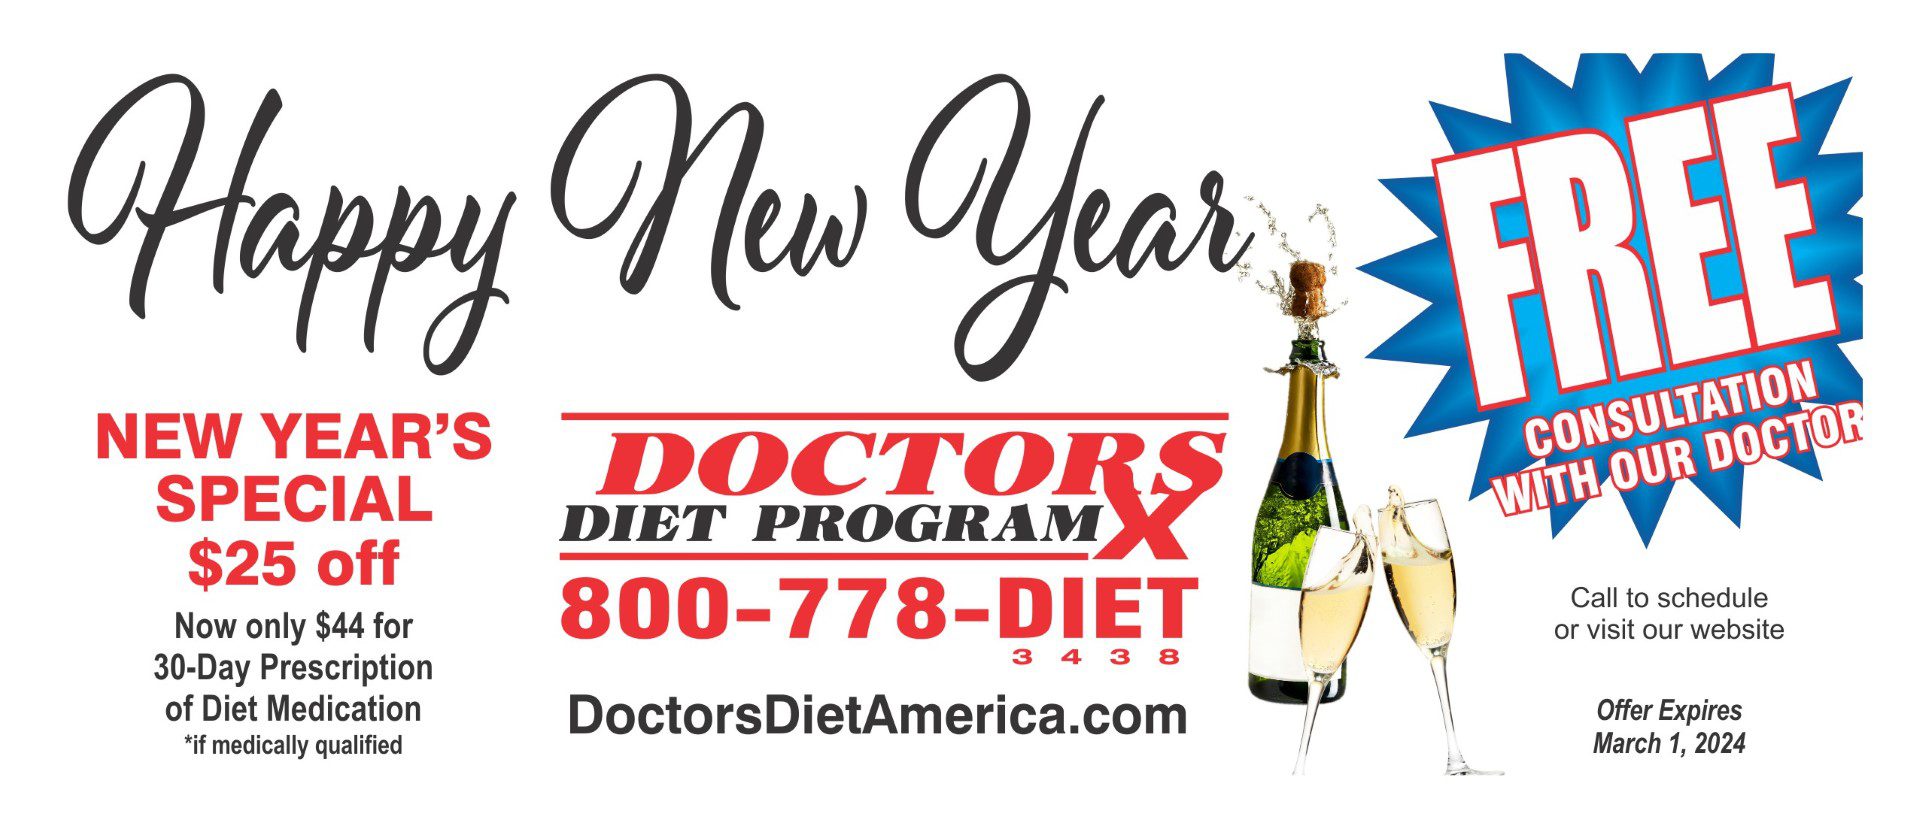 Happy new year doctors diet program.